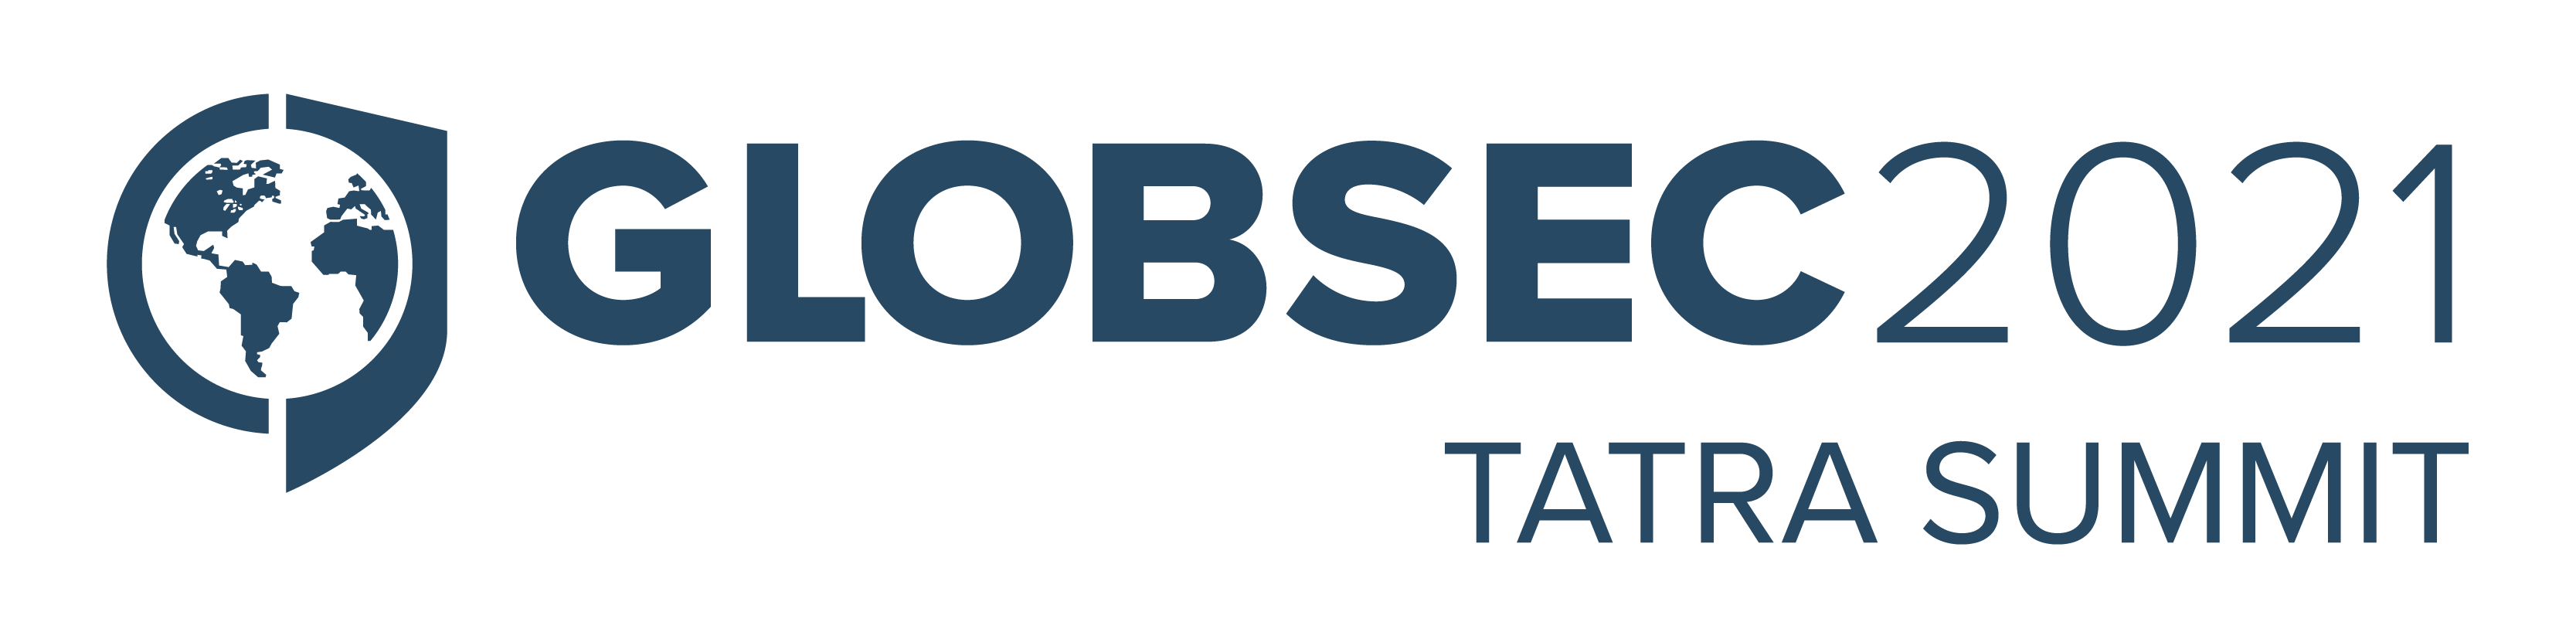 GLOBSEC 2021 Tatra Summit logo